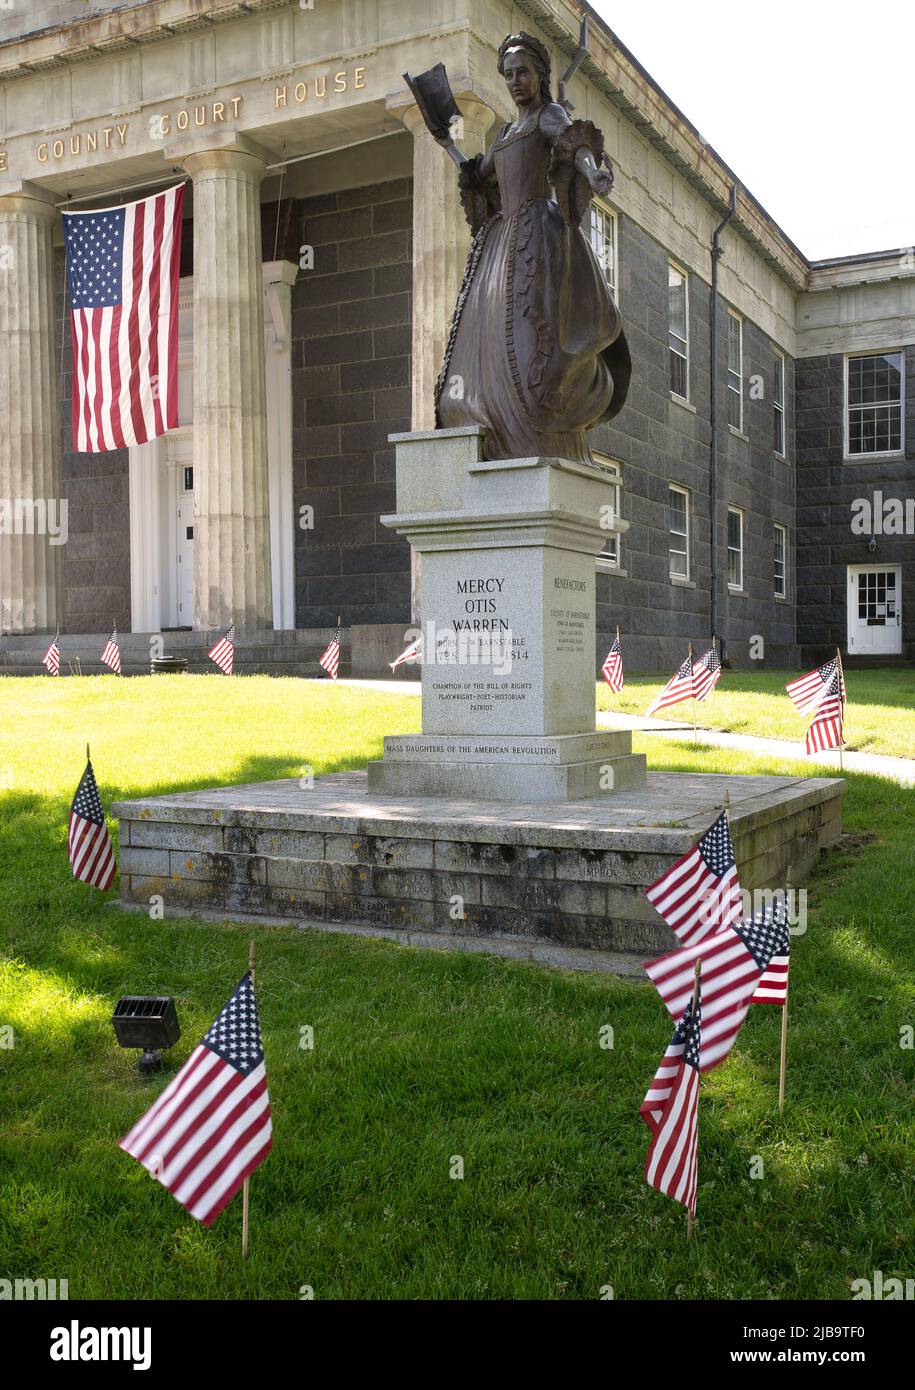 Statua di Mercy Otis Warren (1728 - 1814) e Memorial Day decore sul prato del Barnstable County Superior Court a Barnstable, Massachusetts, ON Foto Stock